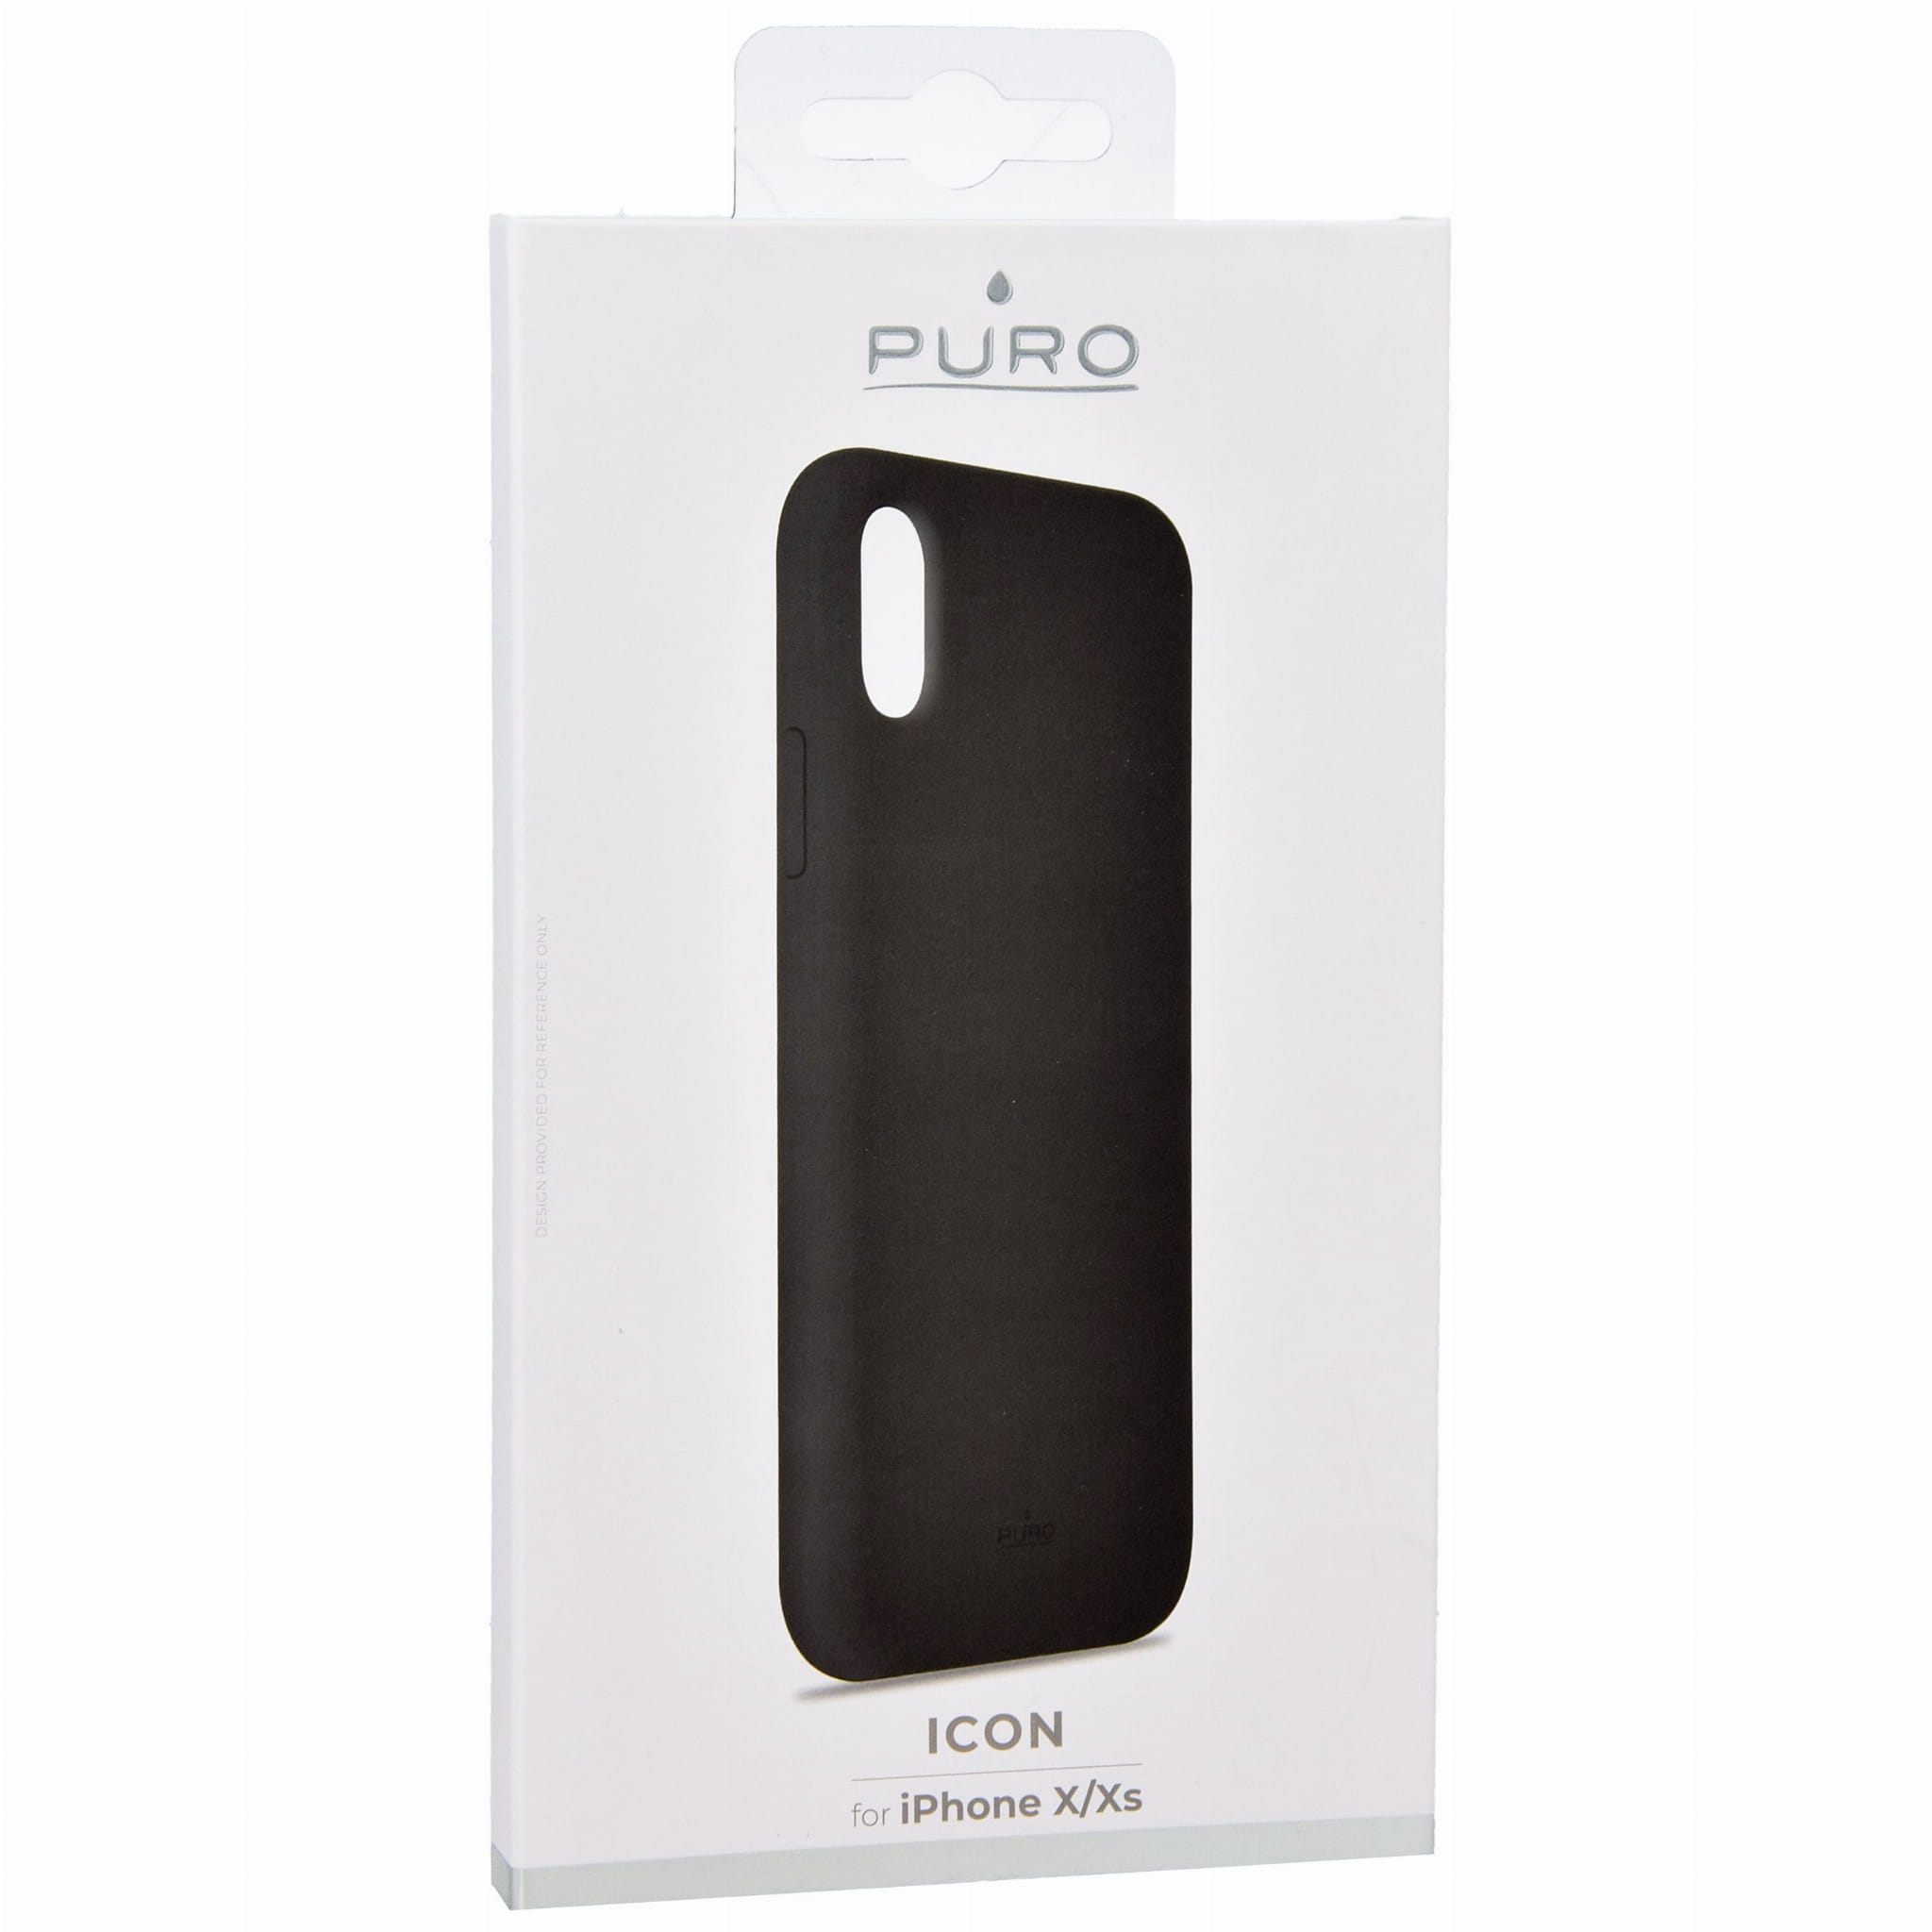 Schutzhülle Puro Icon Cover für iPhone X, Xs, schwarz.